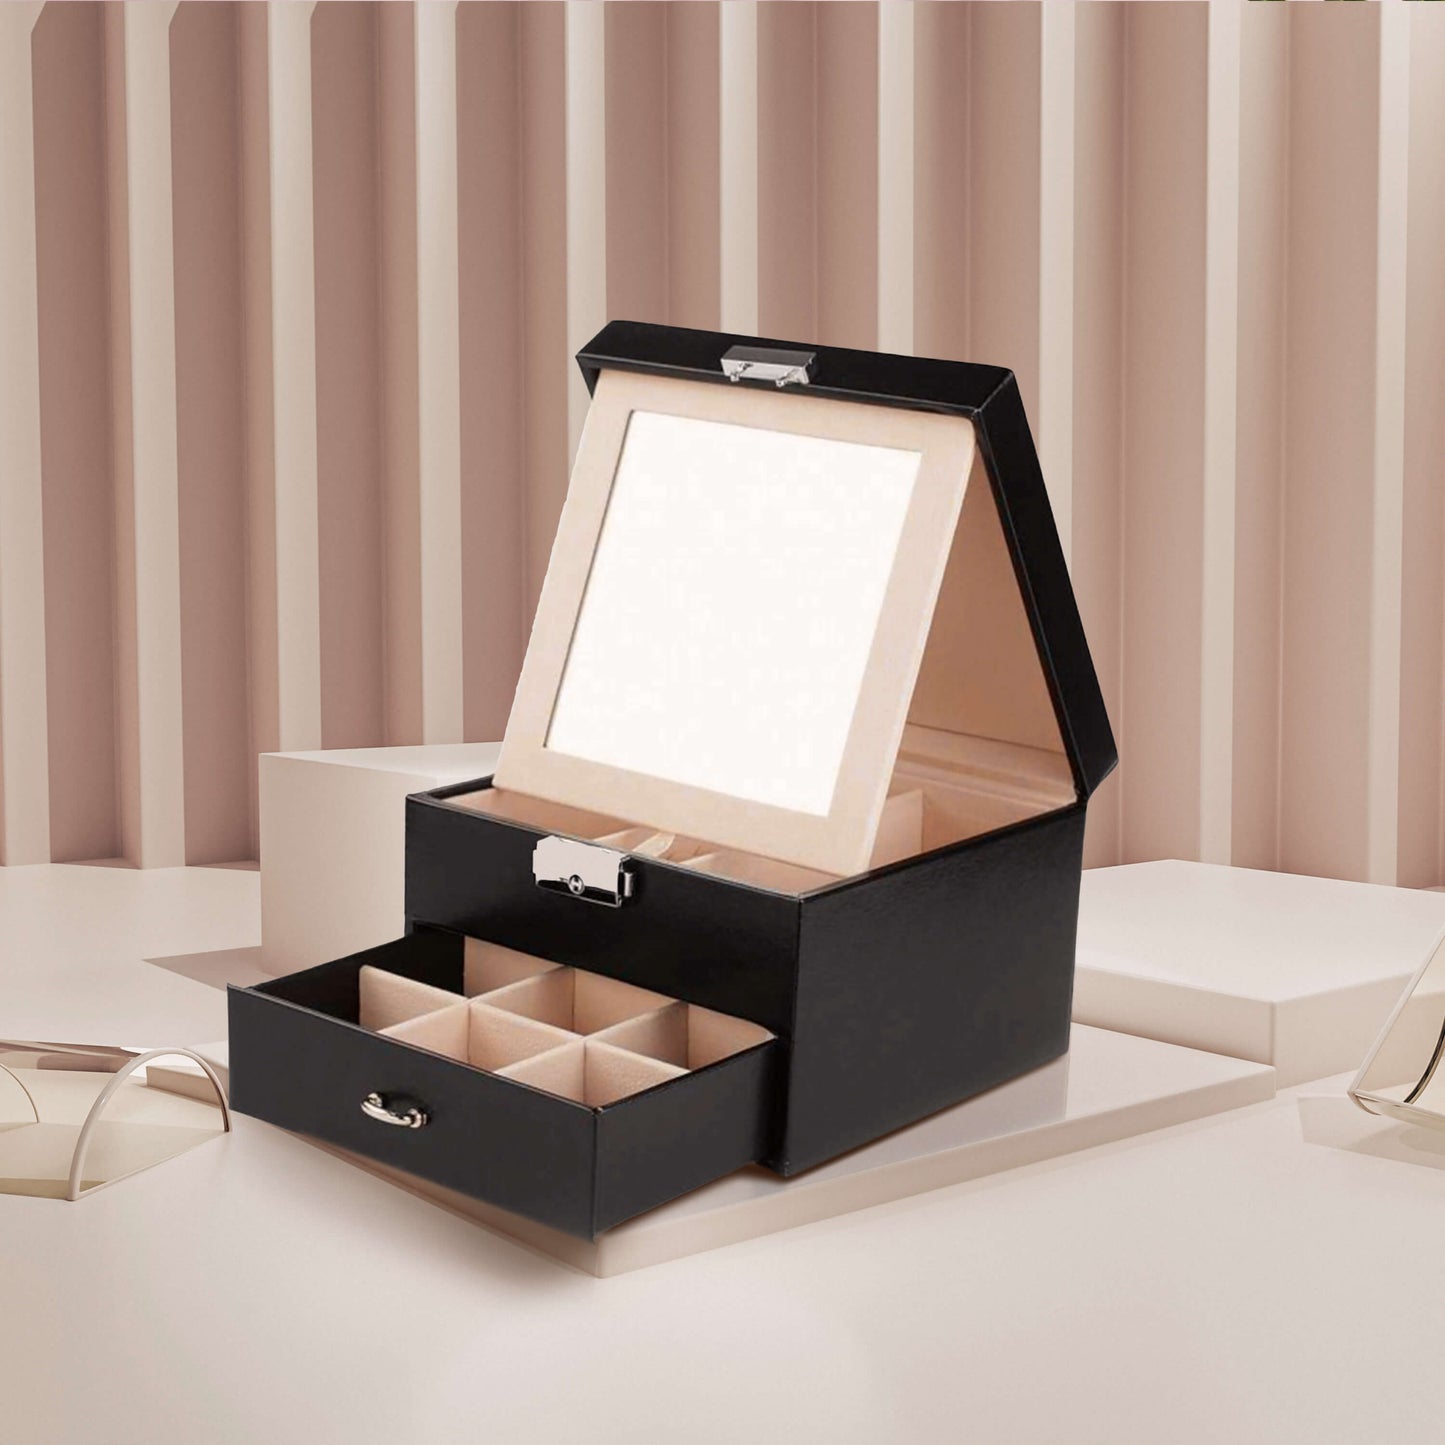 Cutie de bijuterii Prestige de culoare neagră, cu oglindă pliabilă, compartiment tip sertar și mecanism de închidere cu cheie.